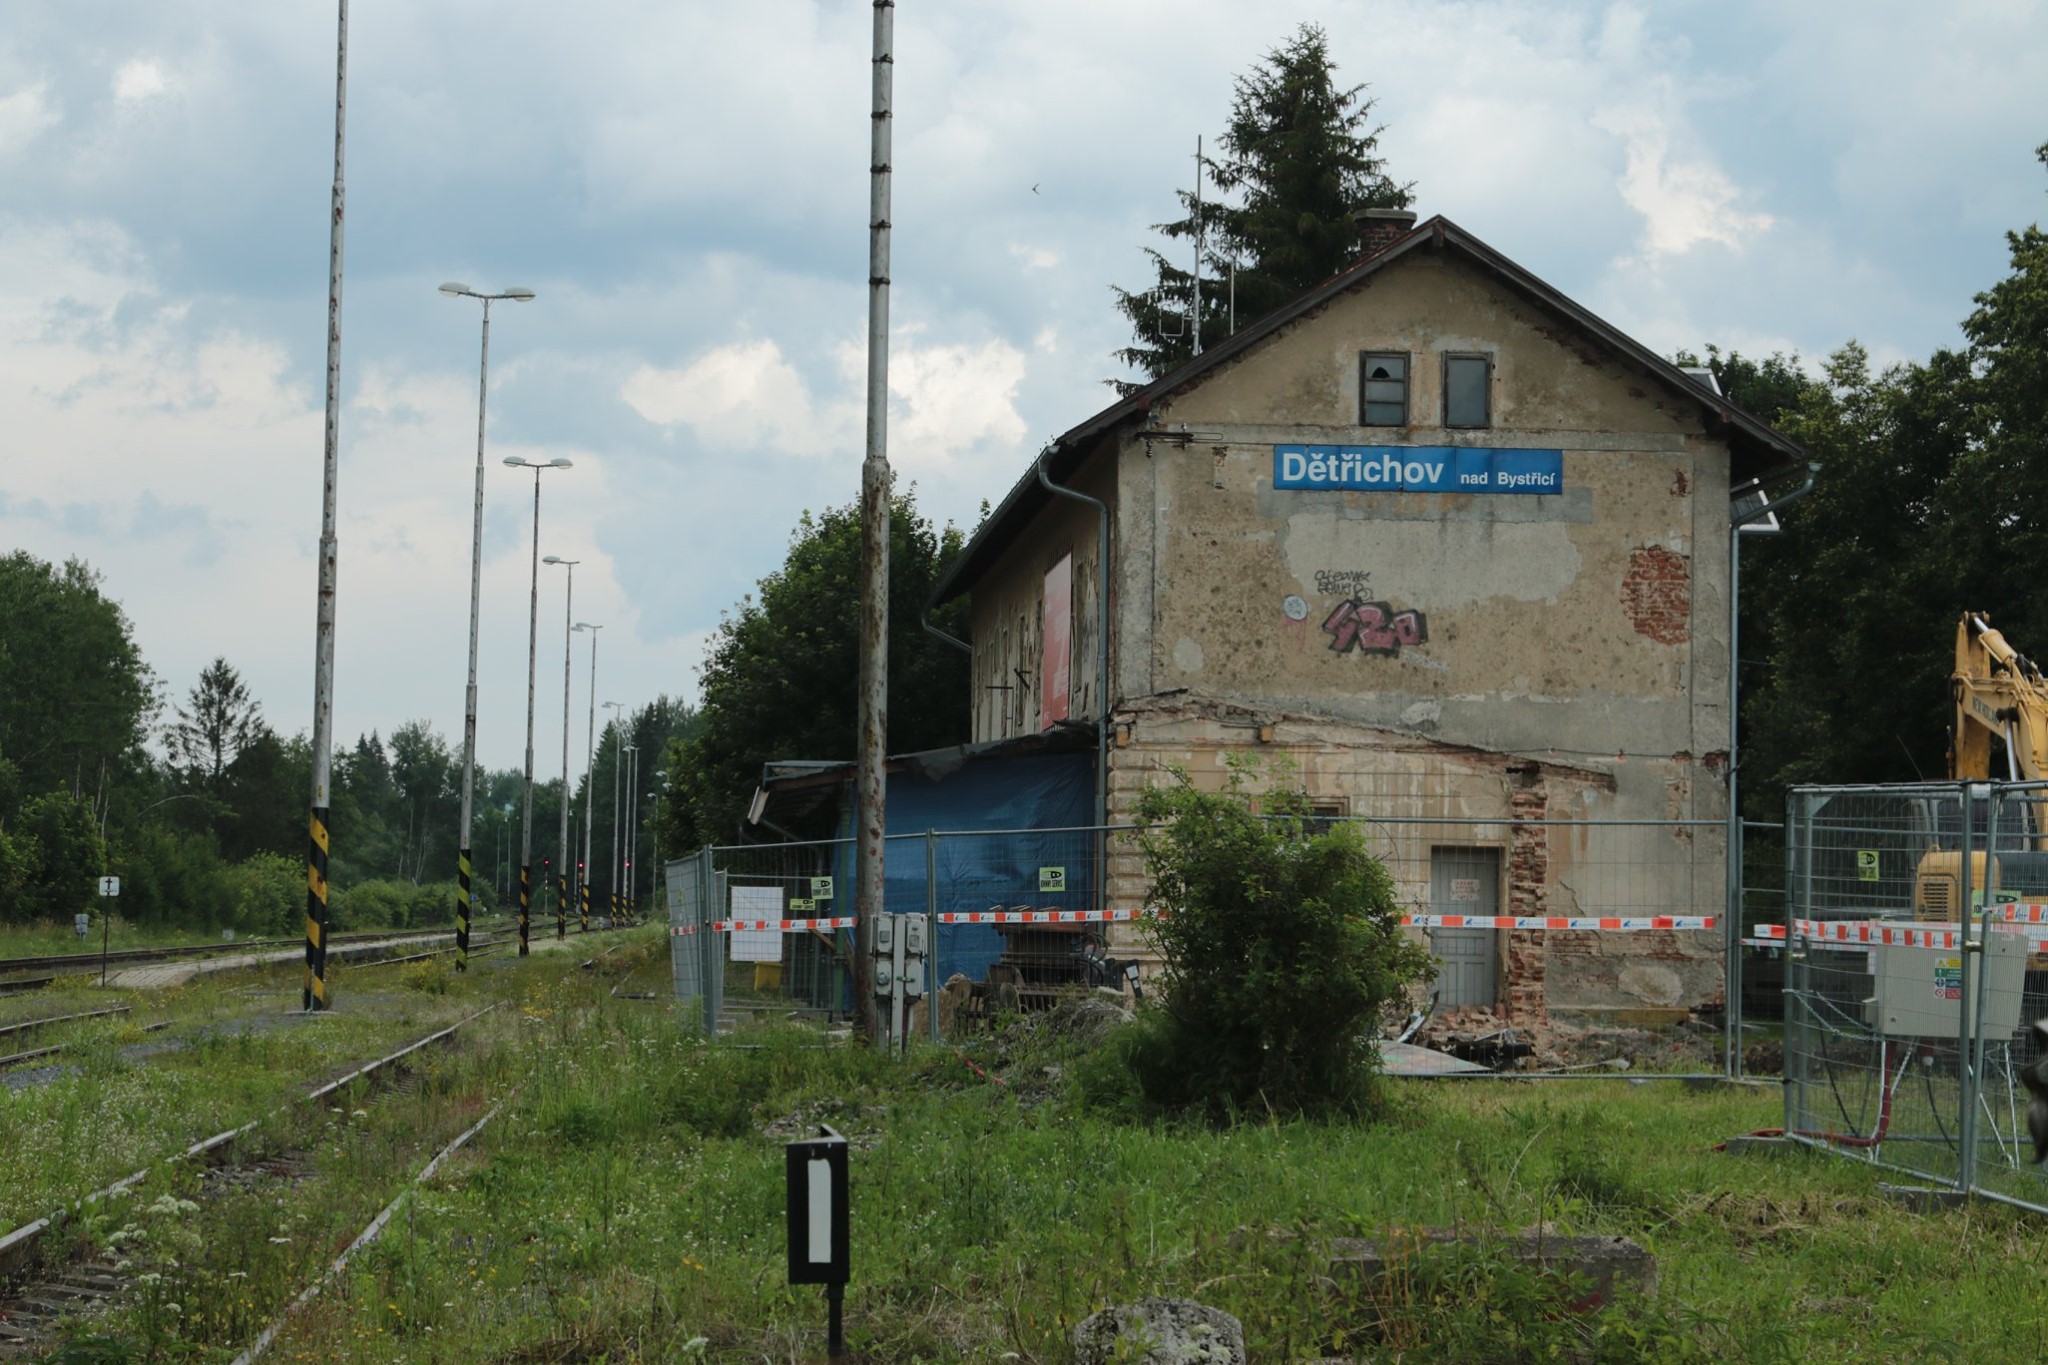 Stará nádražní budova v Dětřichově nad Bystřicí. Foto: FB profil Zachraňme nádraží